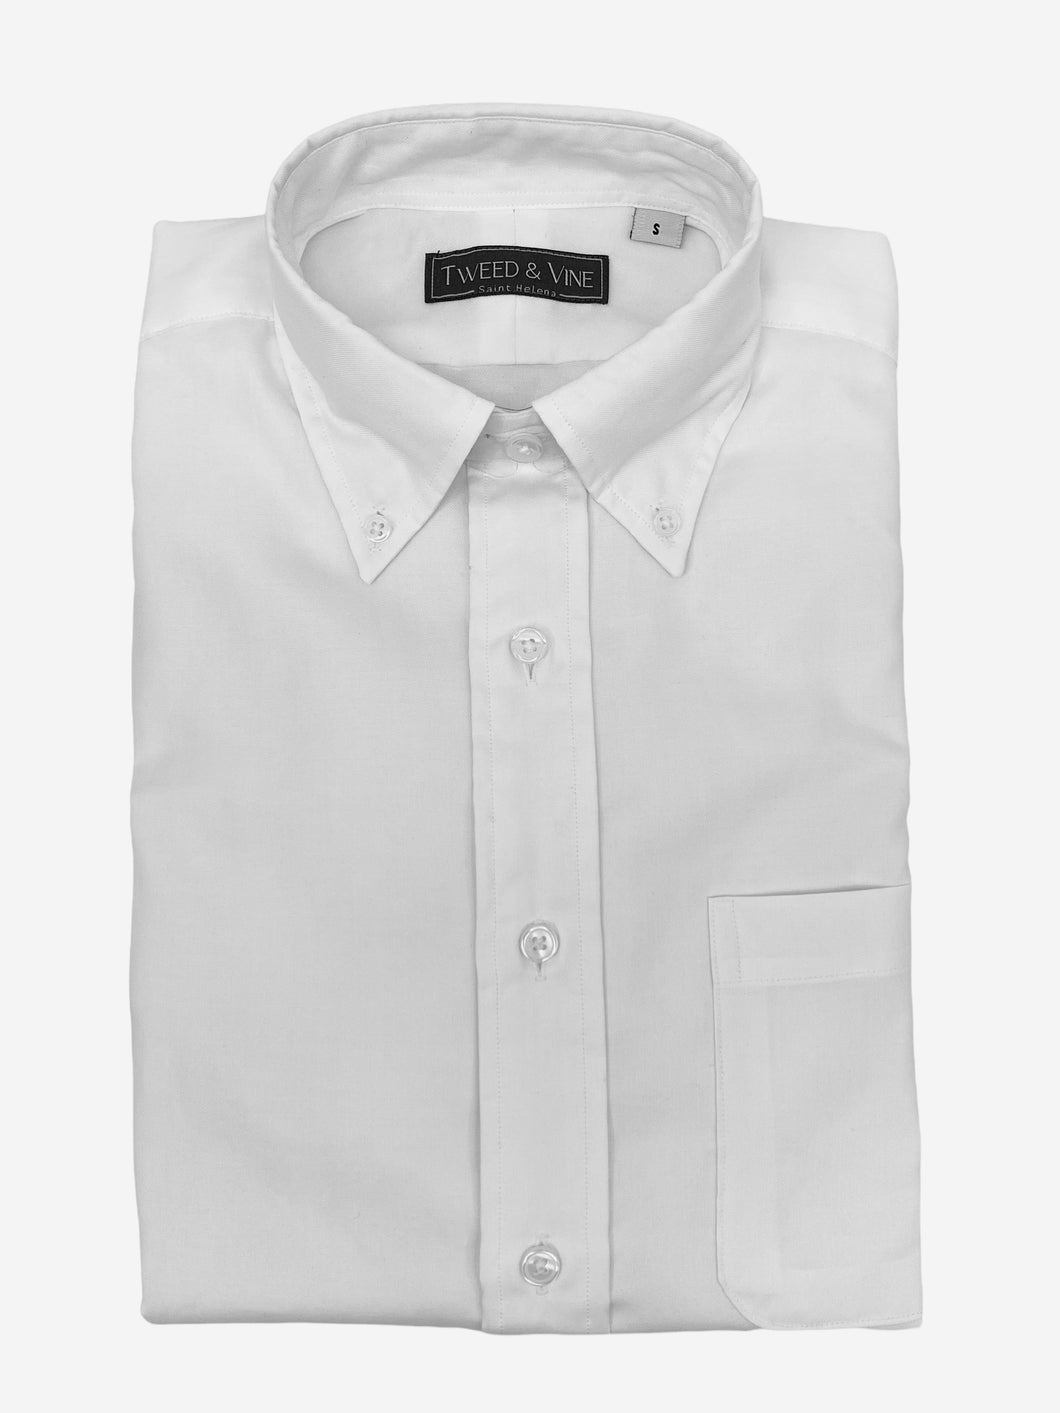 T&V Button Down Shirt - White Oxford